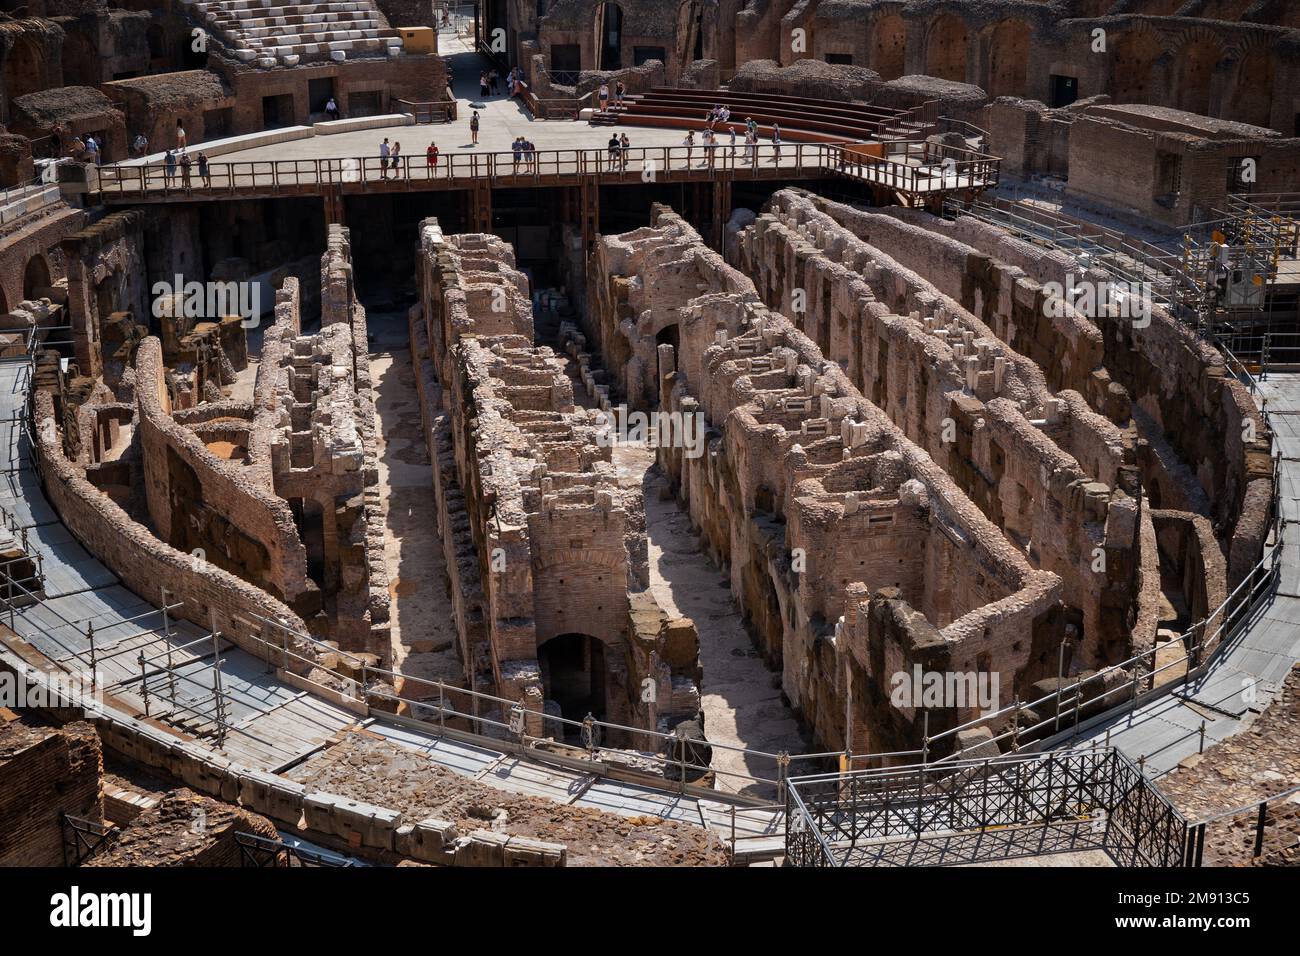 Das Innere des Kolosseums in Rom, Italien. Flavianisches Amphitheater, antikes Stadion und Hypogeum-Ruinen unter der Arena der Gladiatoren. Stockfoto